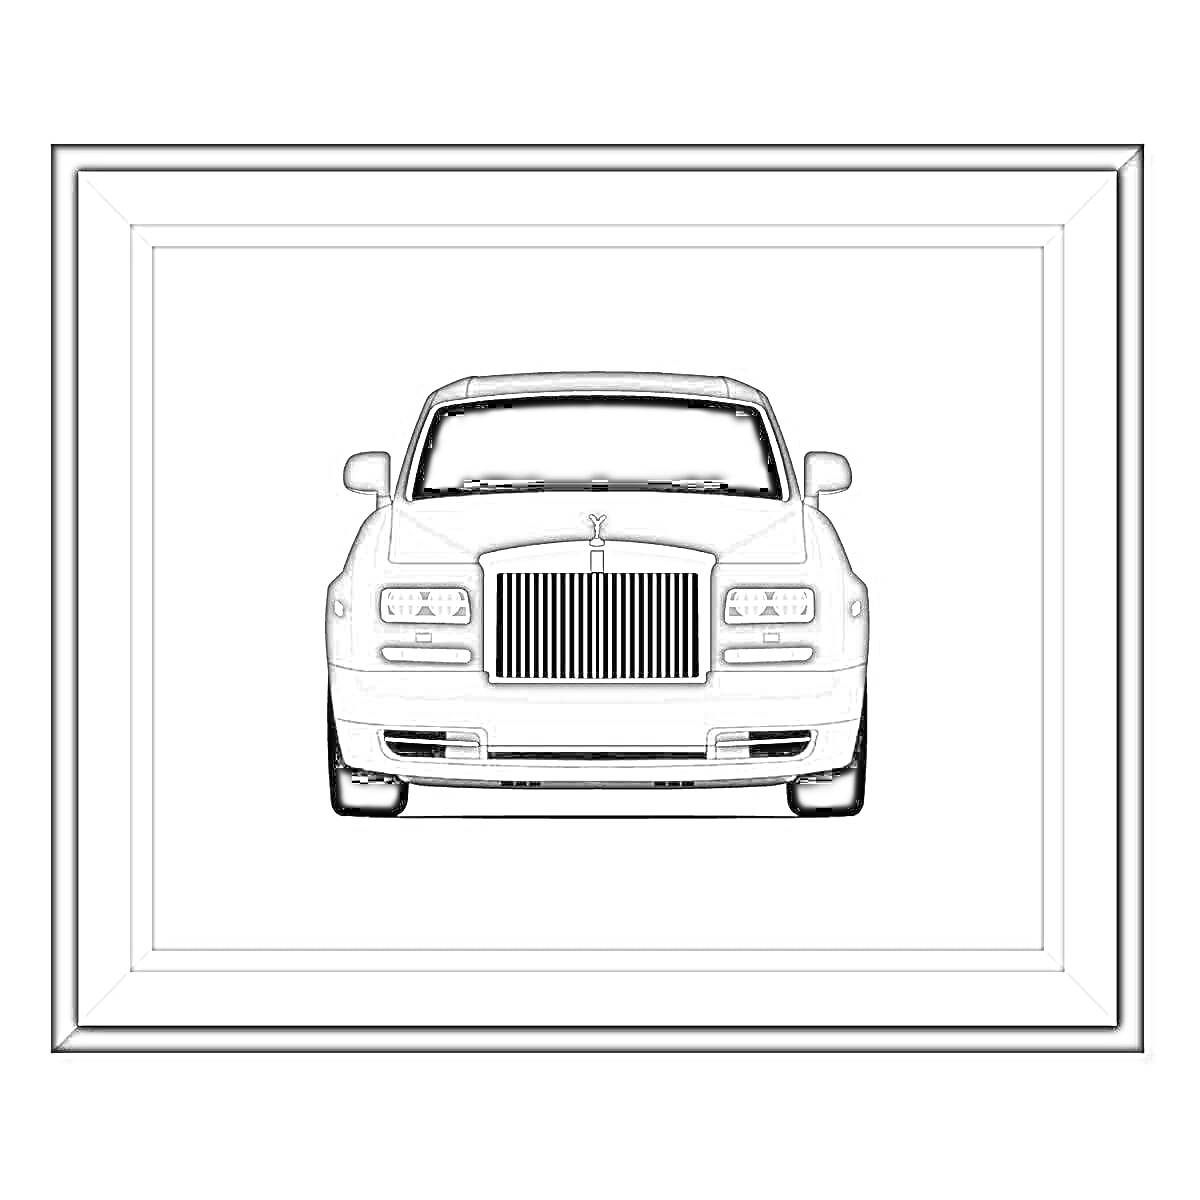 Раскраска Роллс Ройс Фантом - автомобиль, вид спереди, рамка для картины.